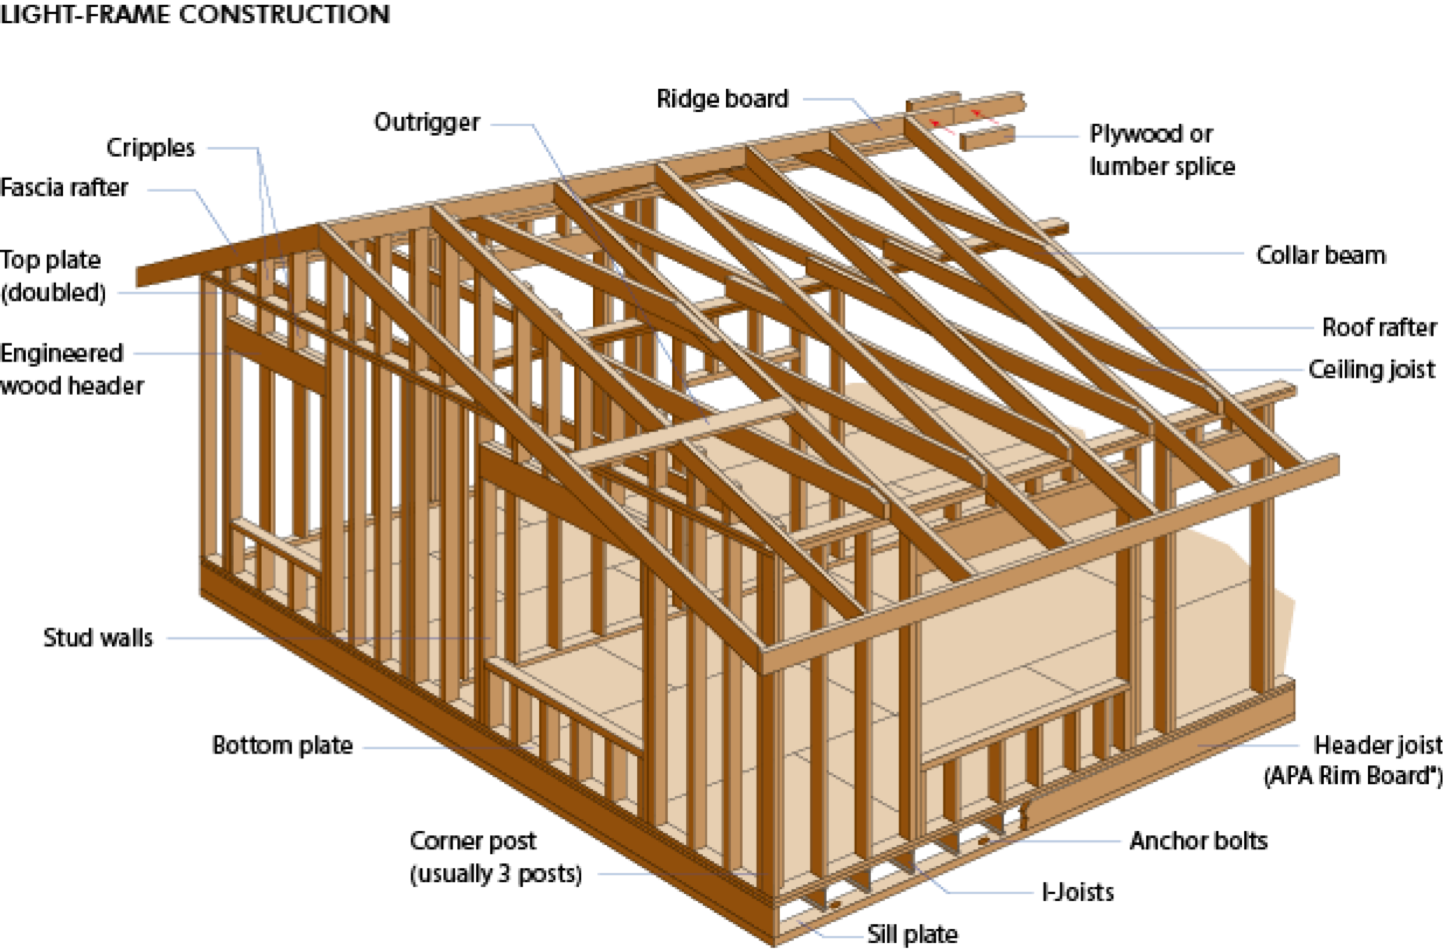 Сколько стоит построить дом в беларуси?